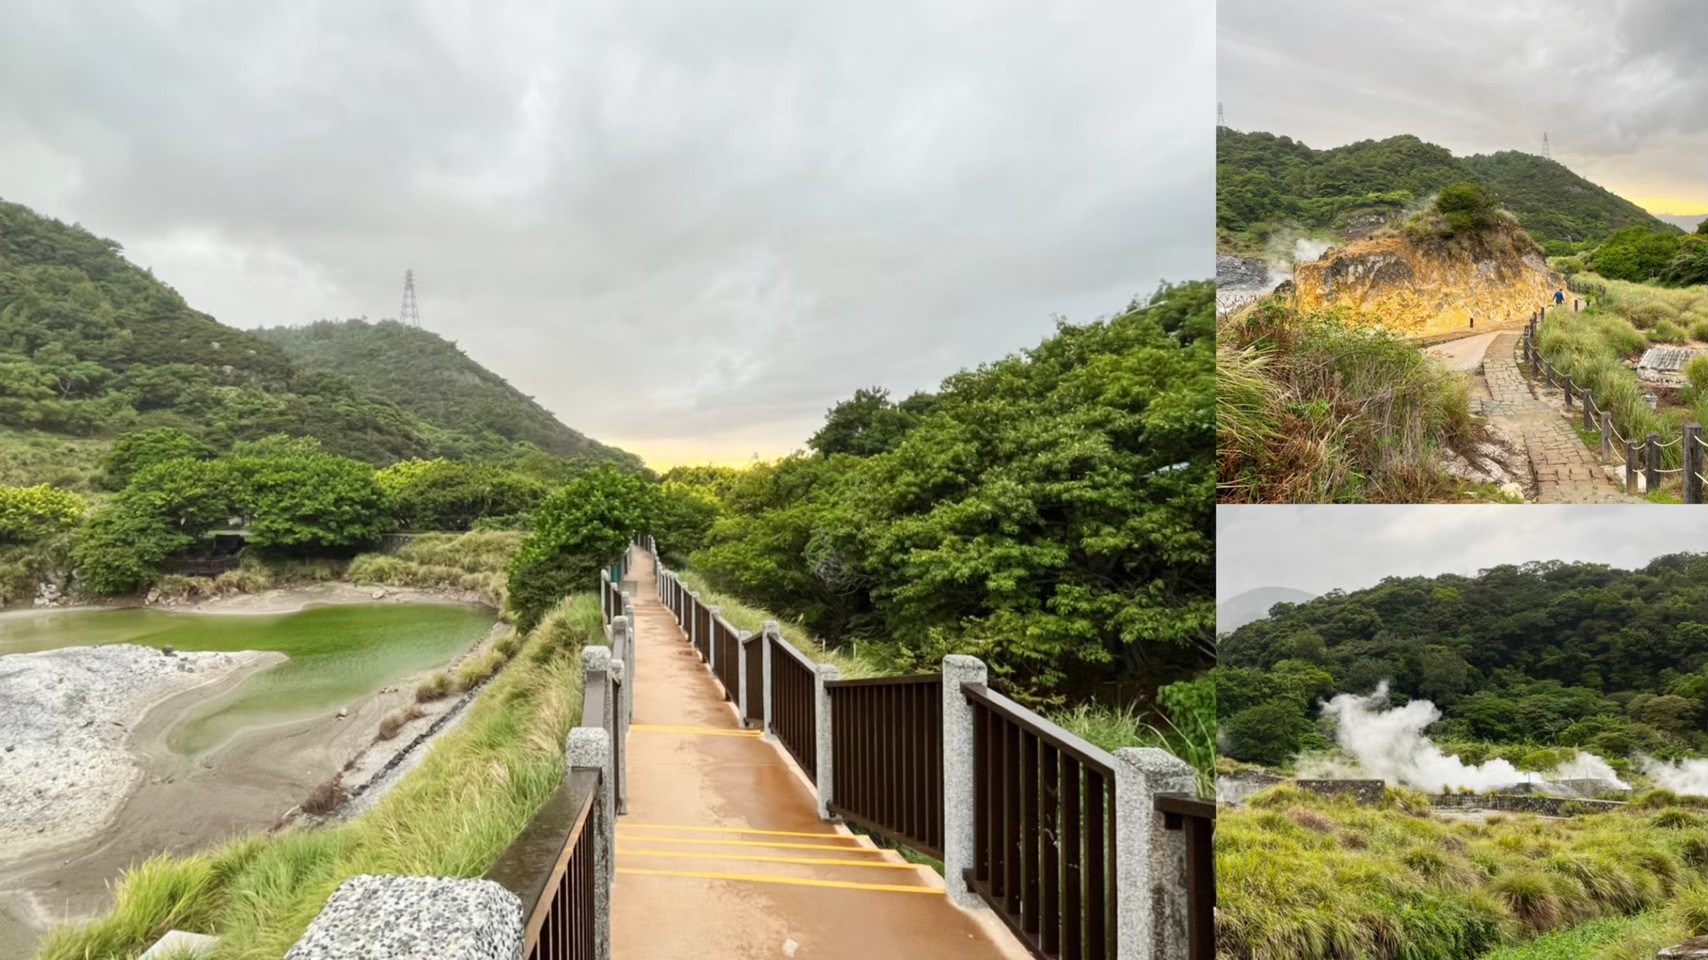 免費景點,免費步道,台北景點,硫磺谷步道,近郊輕旅行